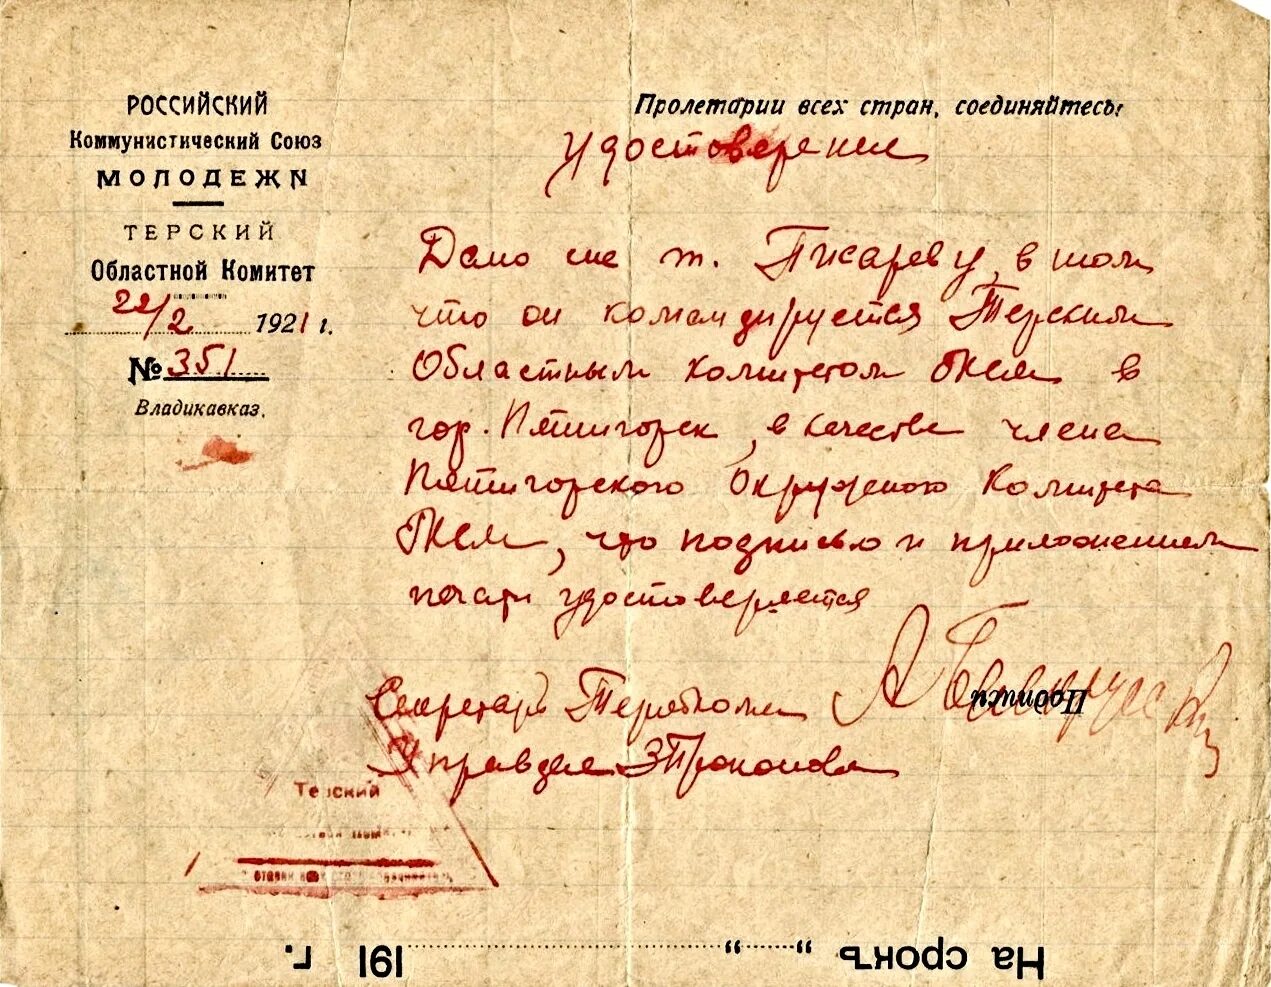 Договор 4. Командировочный номер советского Союза.